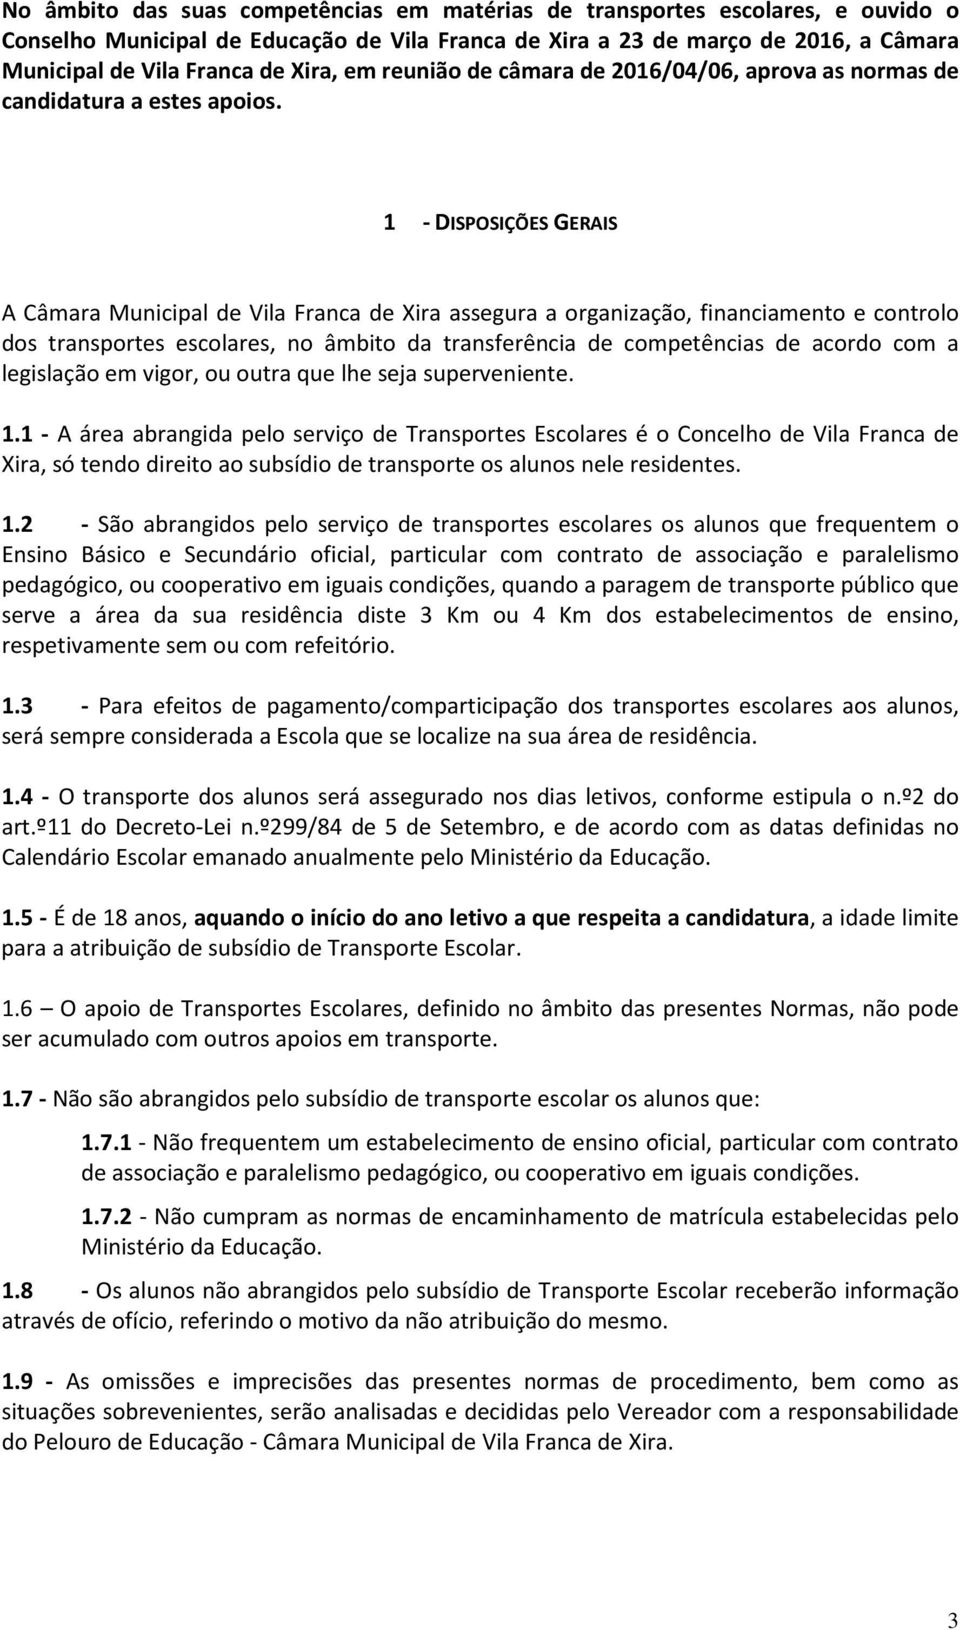 1 - DISPOSIÇÕES GERAIS A Câmara Municipal de Vila Franca de Xira assegura a organização, financiamento e controlo dos transportes escolares, no âmbito da transferência de competências de acordo com a